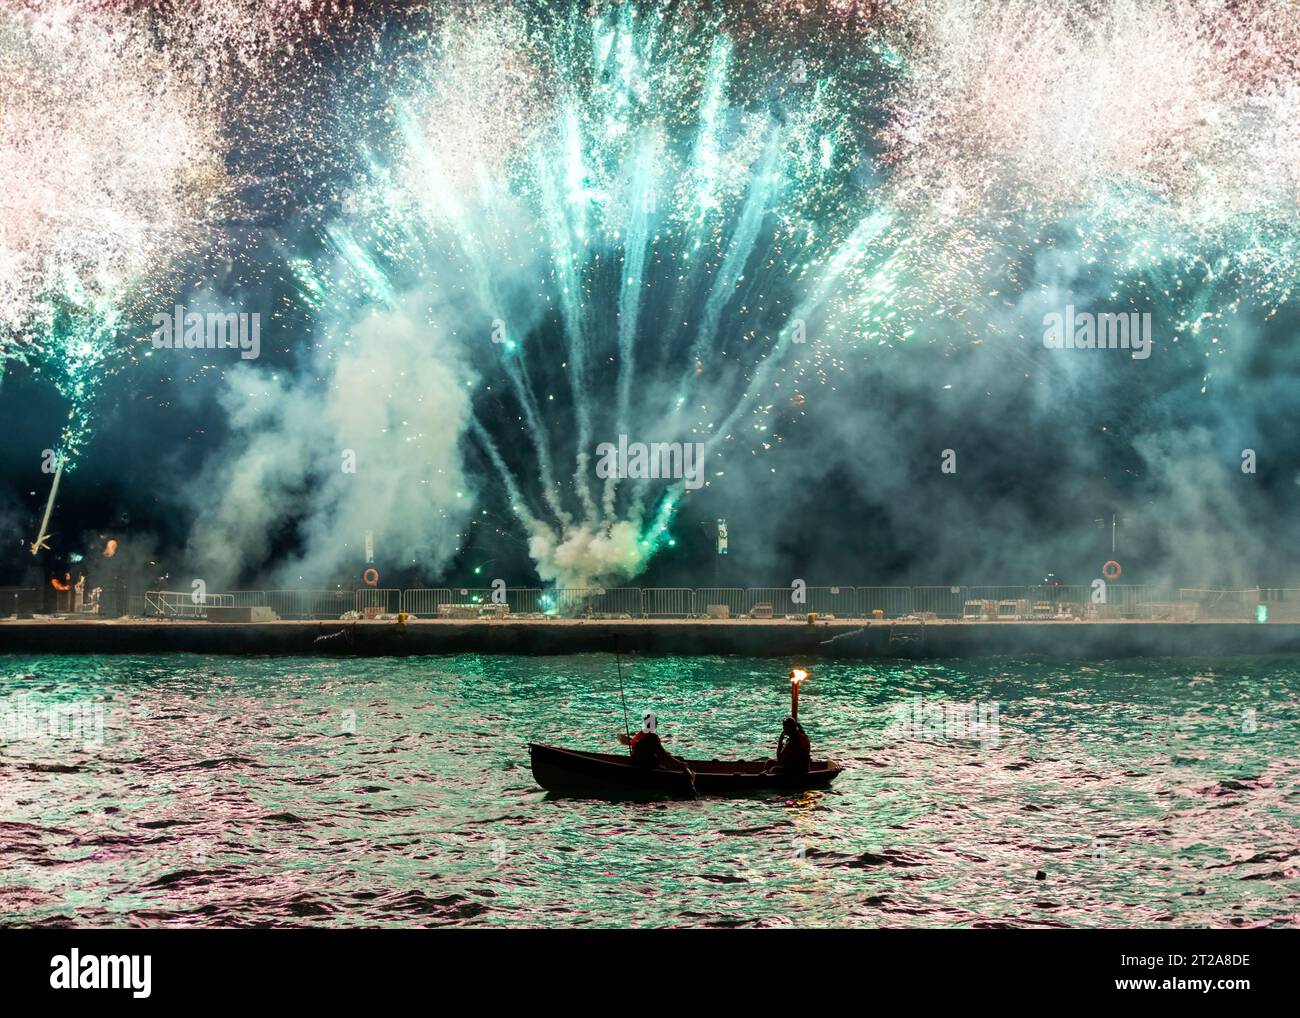 Fantastici fuochi d'artificio durante i festeggiamenti dell'Armata, una consuetudine locale annuale dell'isola di Spetses, Grecia, Europa, che rappresenta una battaglia navale Foto Stock